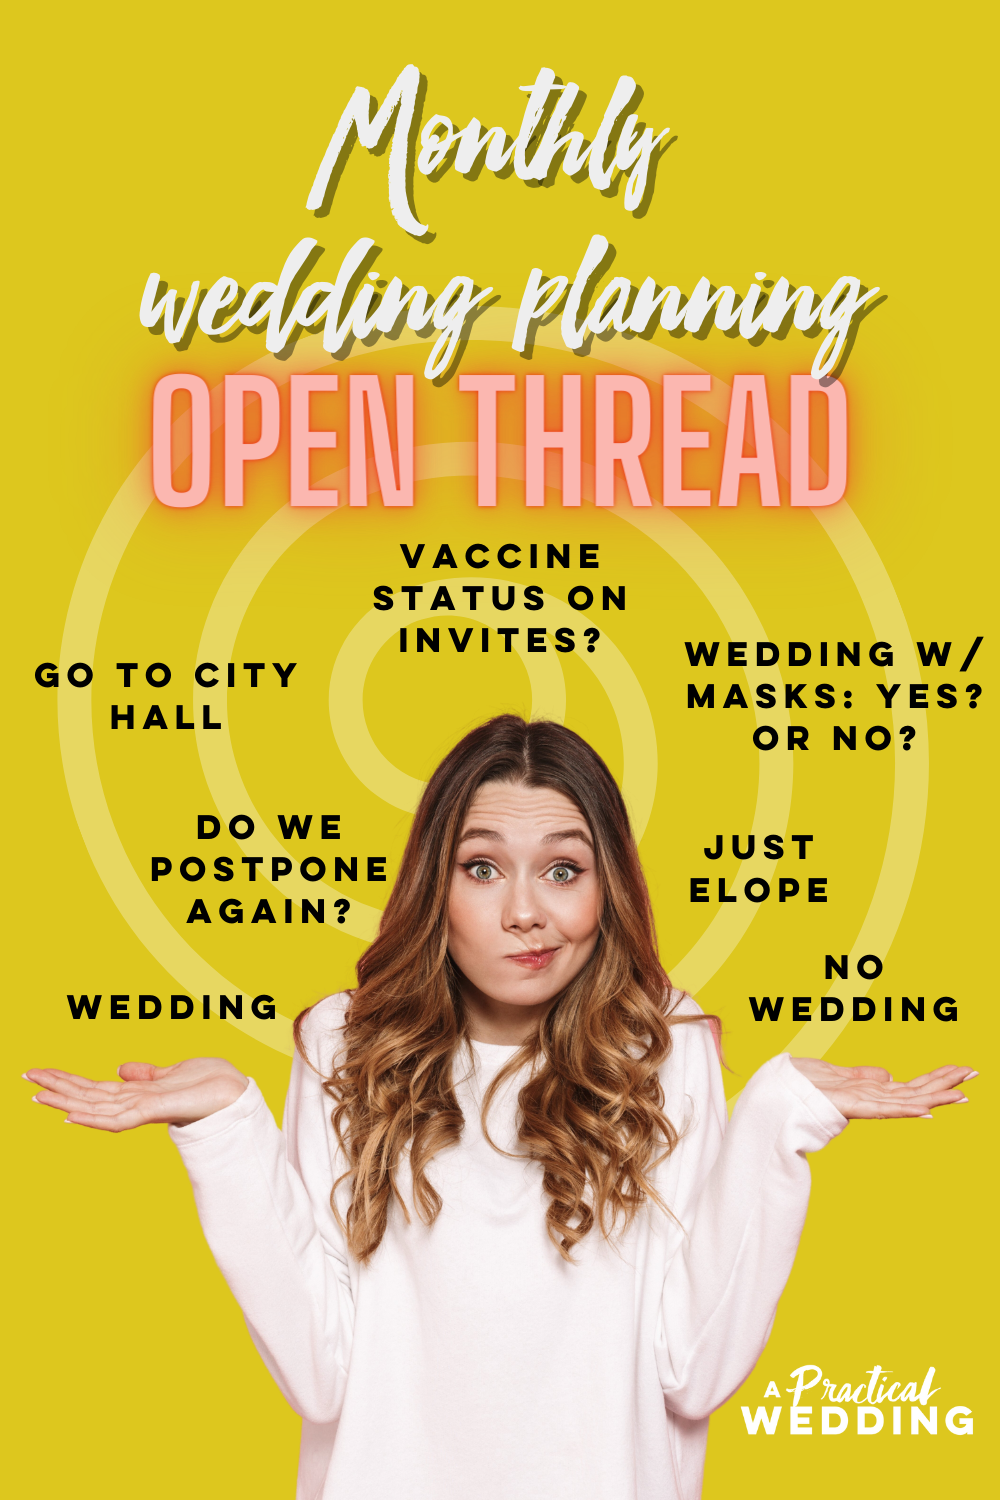 Open Thread - Chuỗi mở kế hoạch đám cưới vào tháng 9 năm 2021